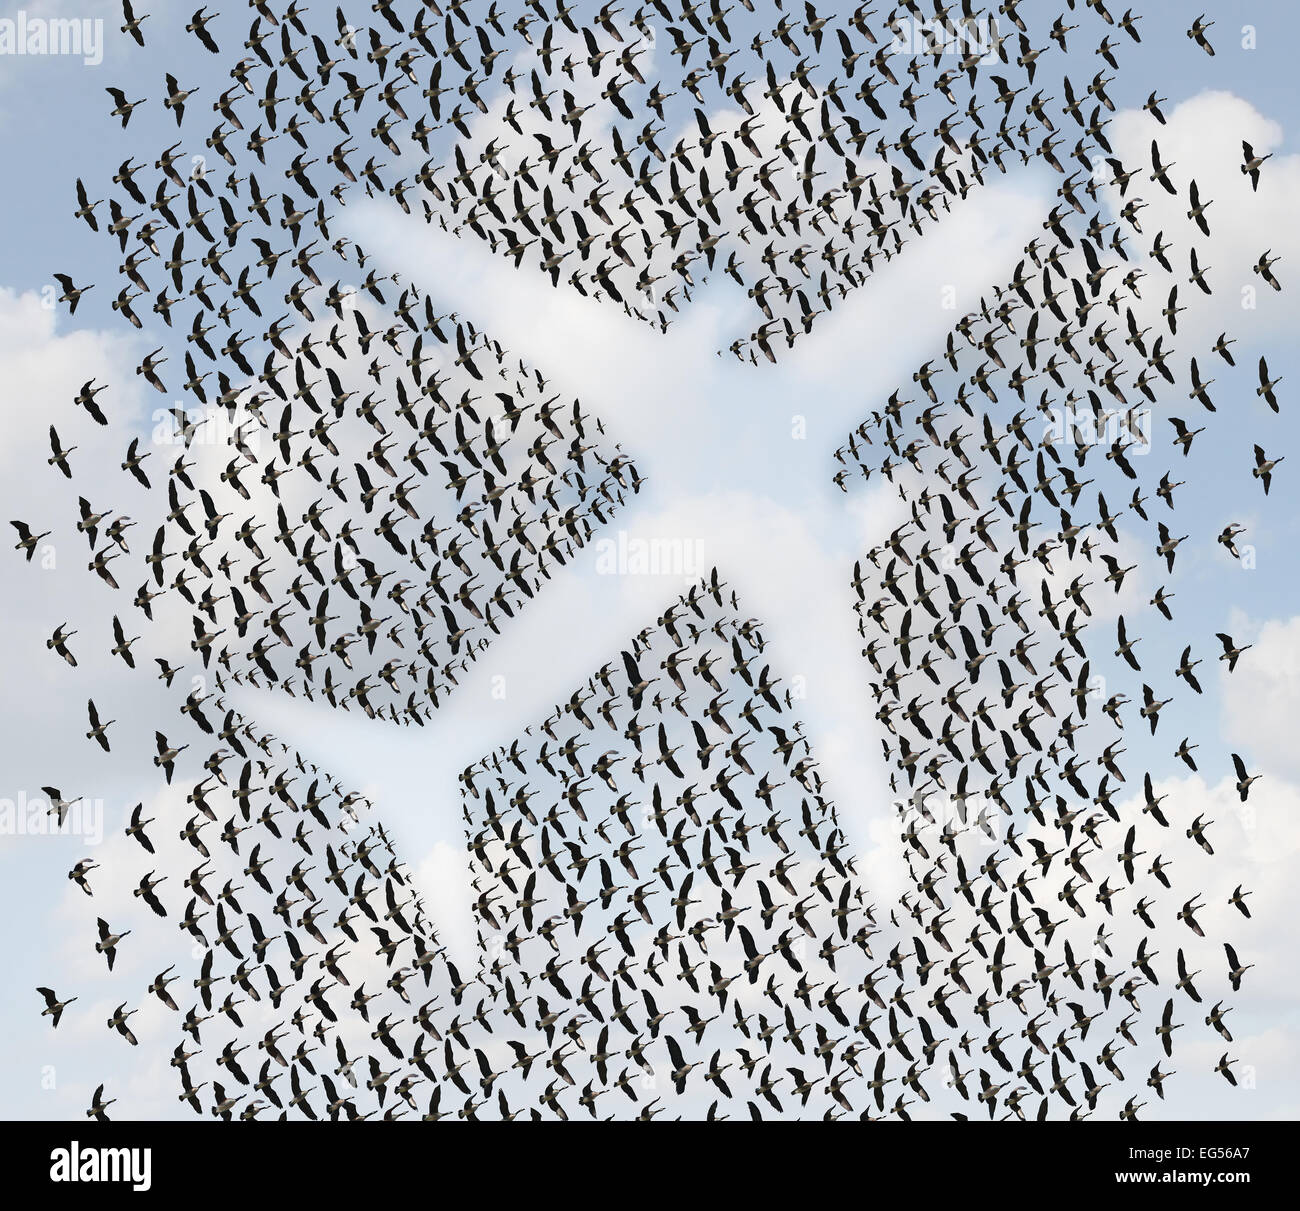 Aria concetto di viaggio come uno stormo di uccelli in volo o di oche organizzati in forma di un passeggero aereo jet come un trasporto aereo e il trasporto simbolo. Foto Stock